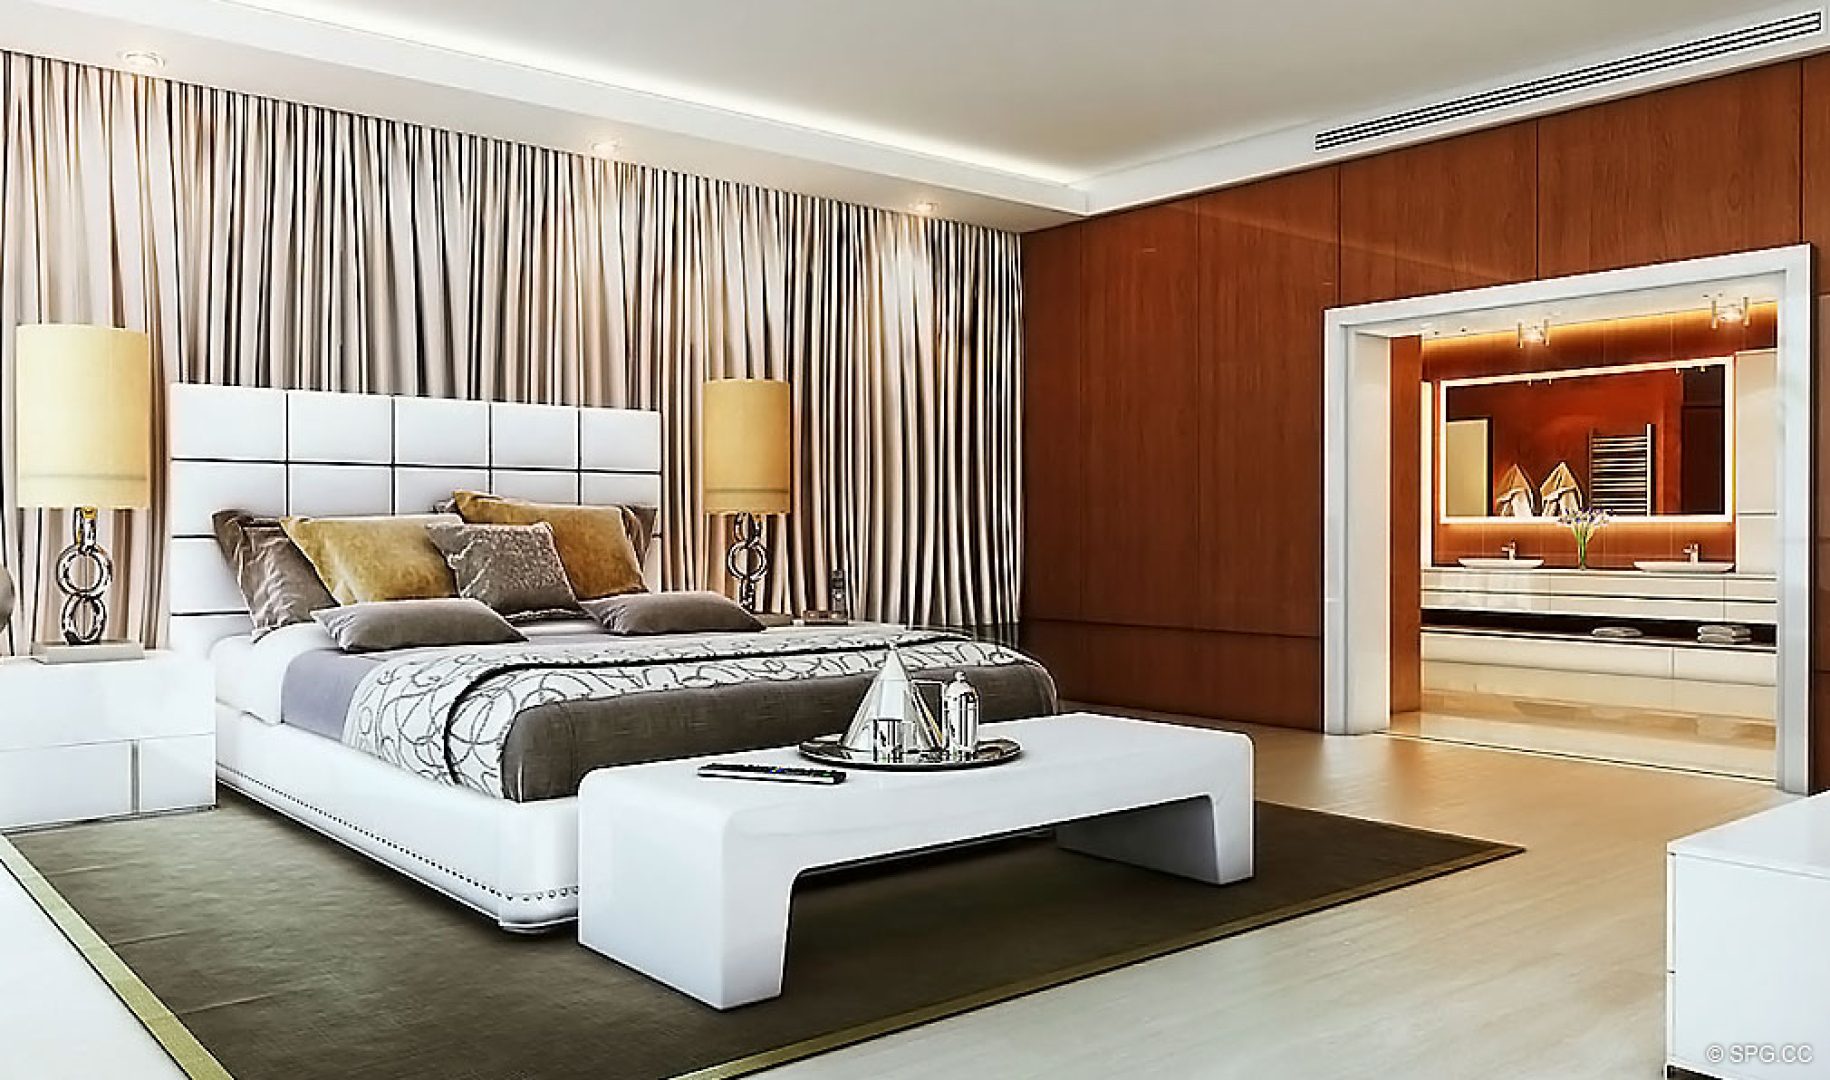 Bedroom Design at AquaLuna Las Olas, Luxury Waterfront Condos in Fort Lauderdale, Florida 33301